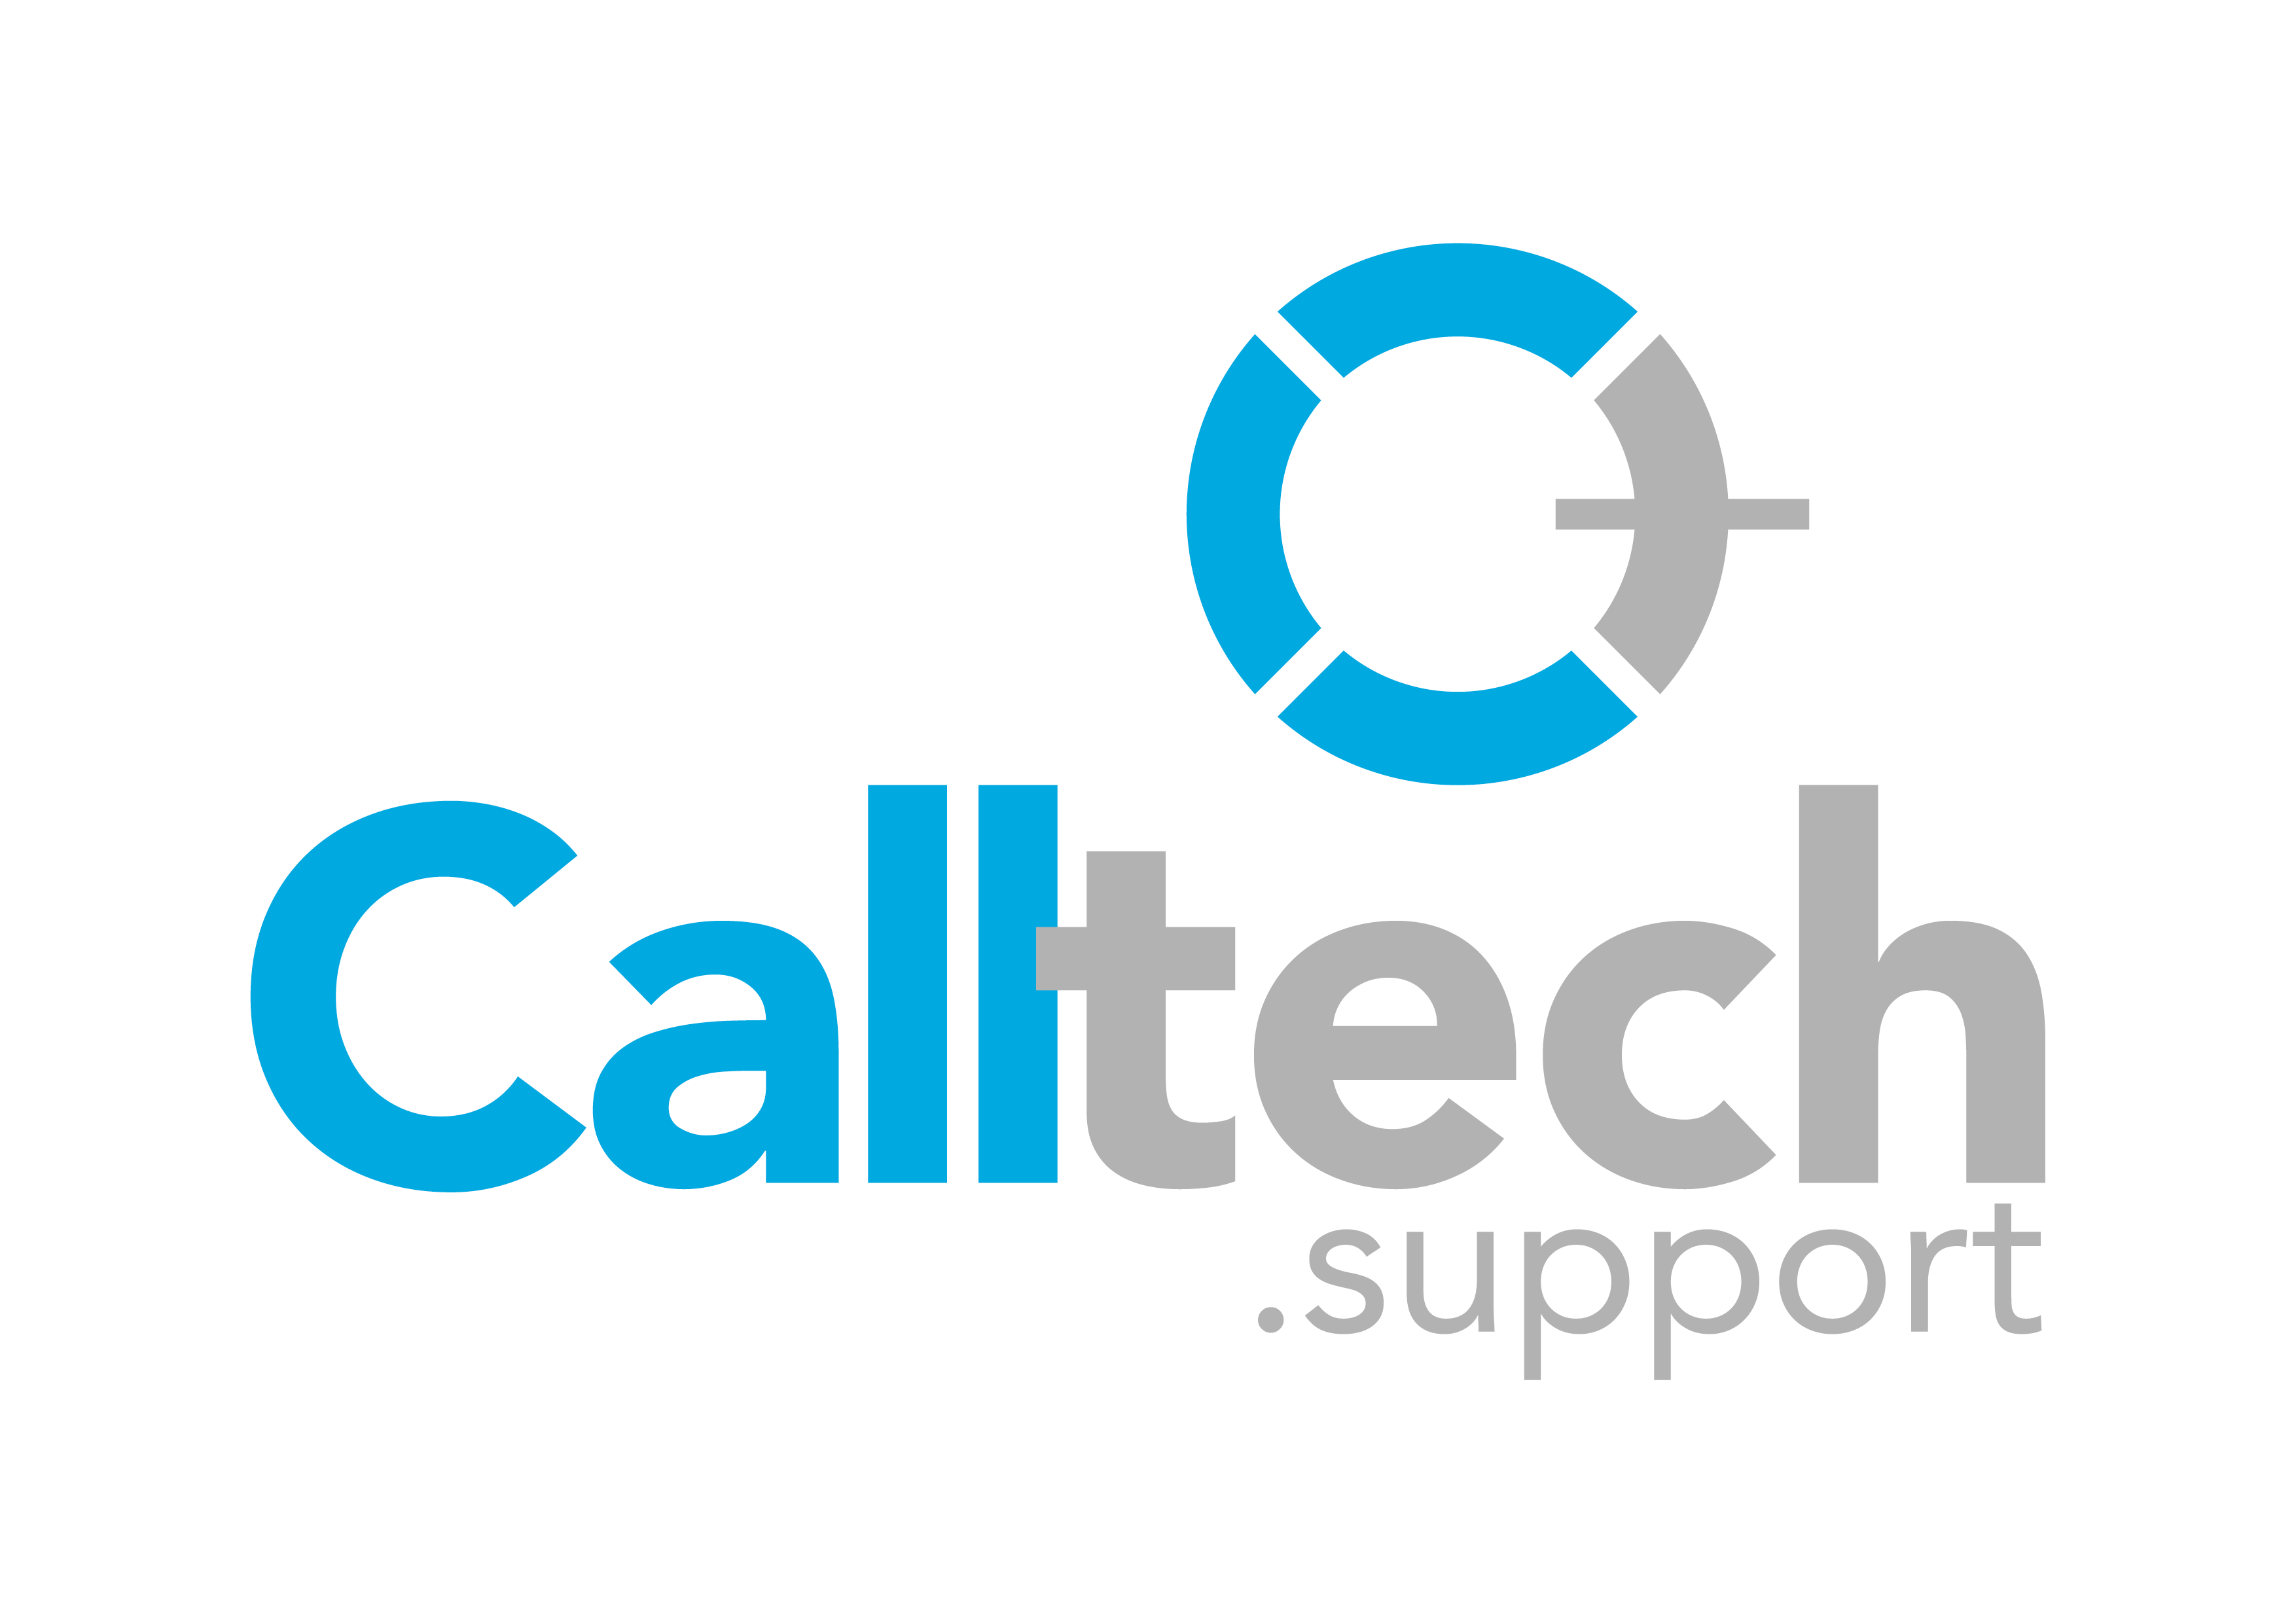 Calltech